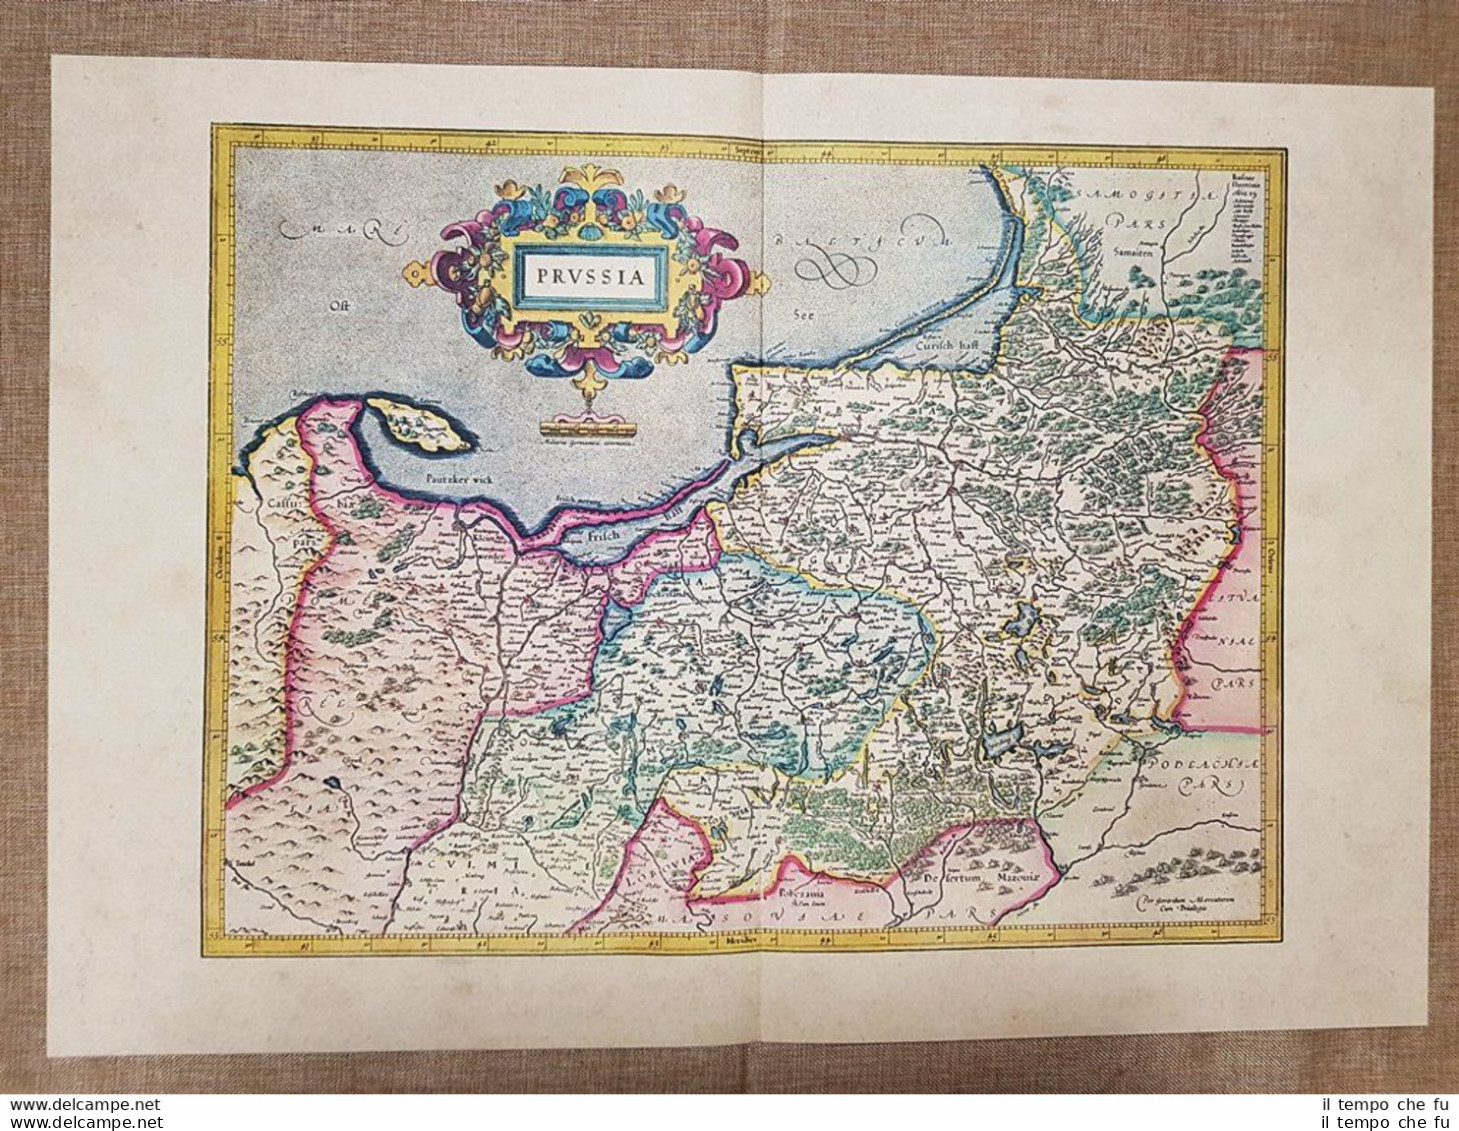 Carta Geografica Mappa Borussia Prussia Anno 1595 Di Mercatore Mercator Ristampa - Geographical Maps